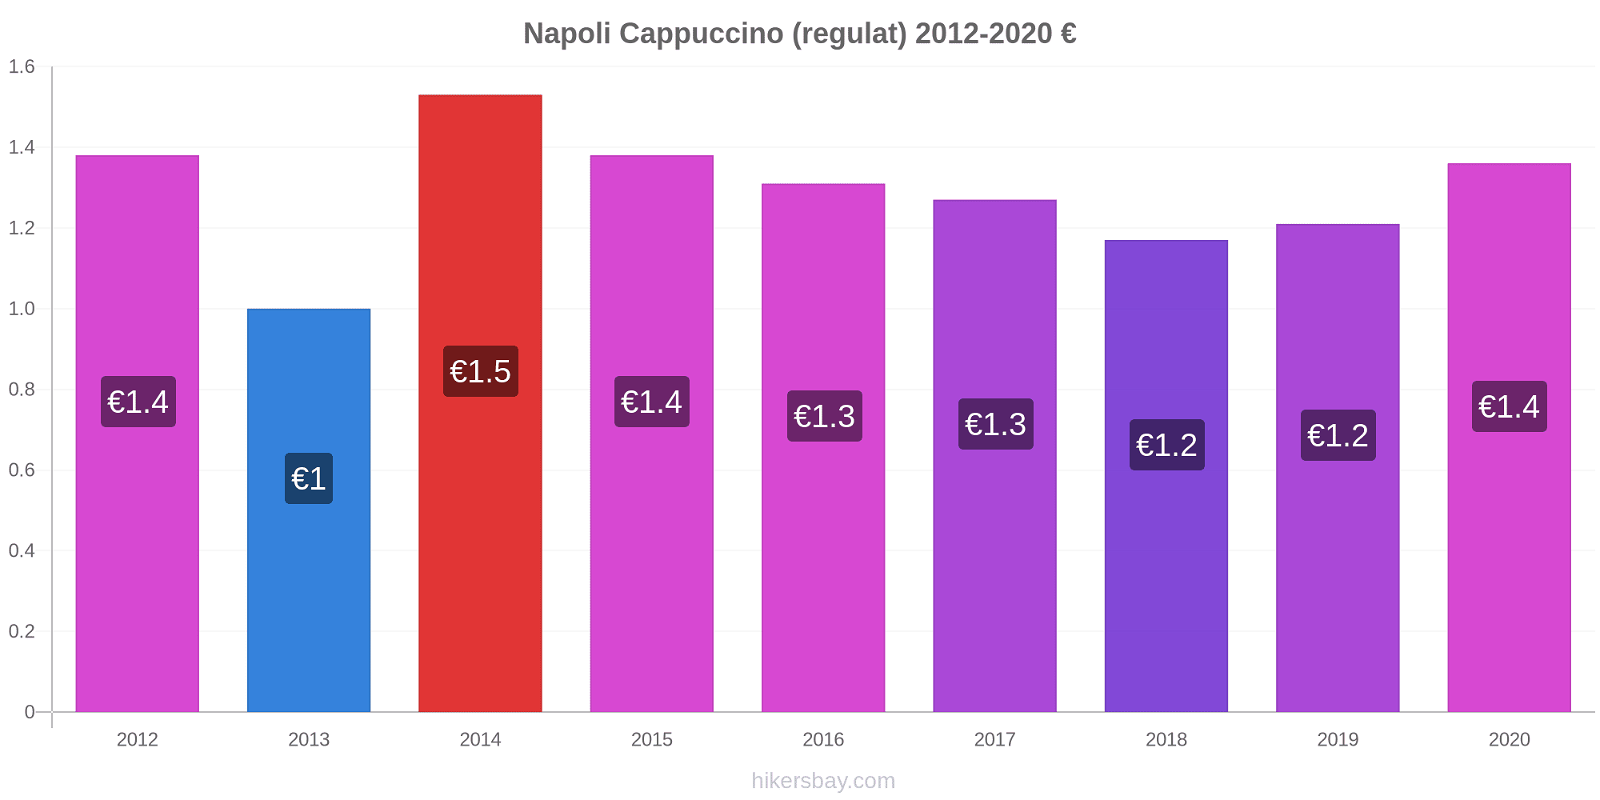 Napoli modificări de preț Cappuccino (regulat) hikersbay.com